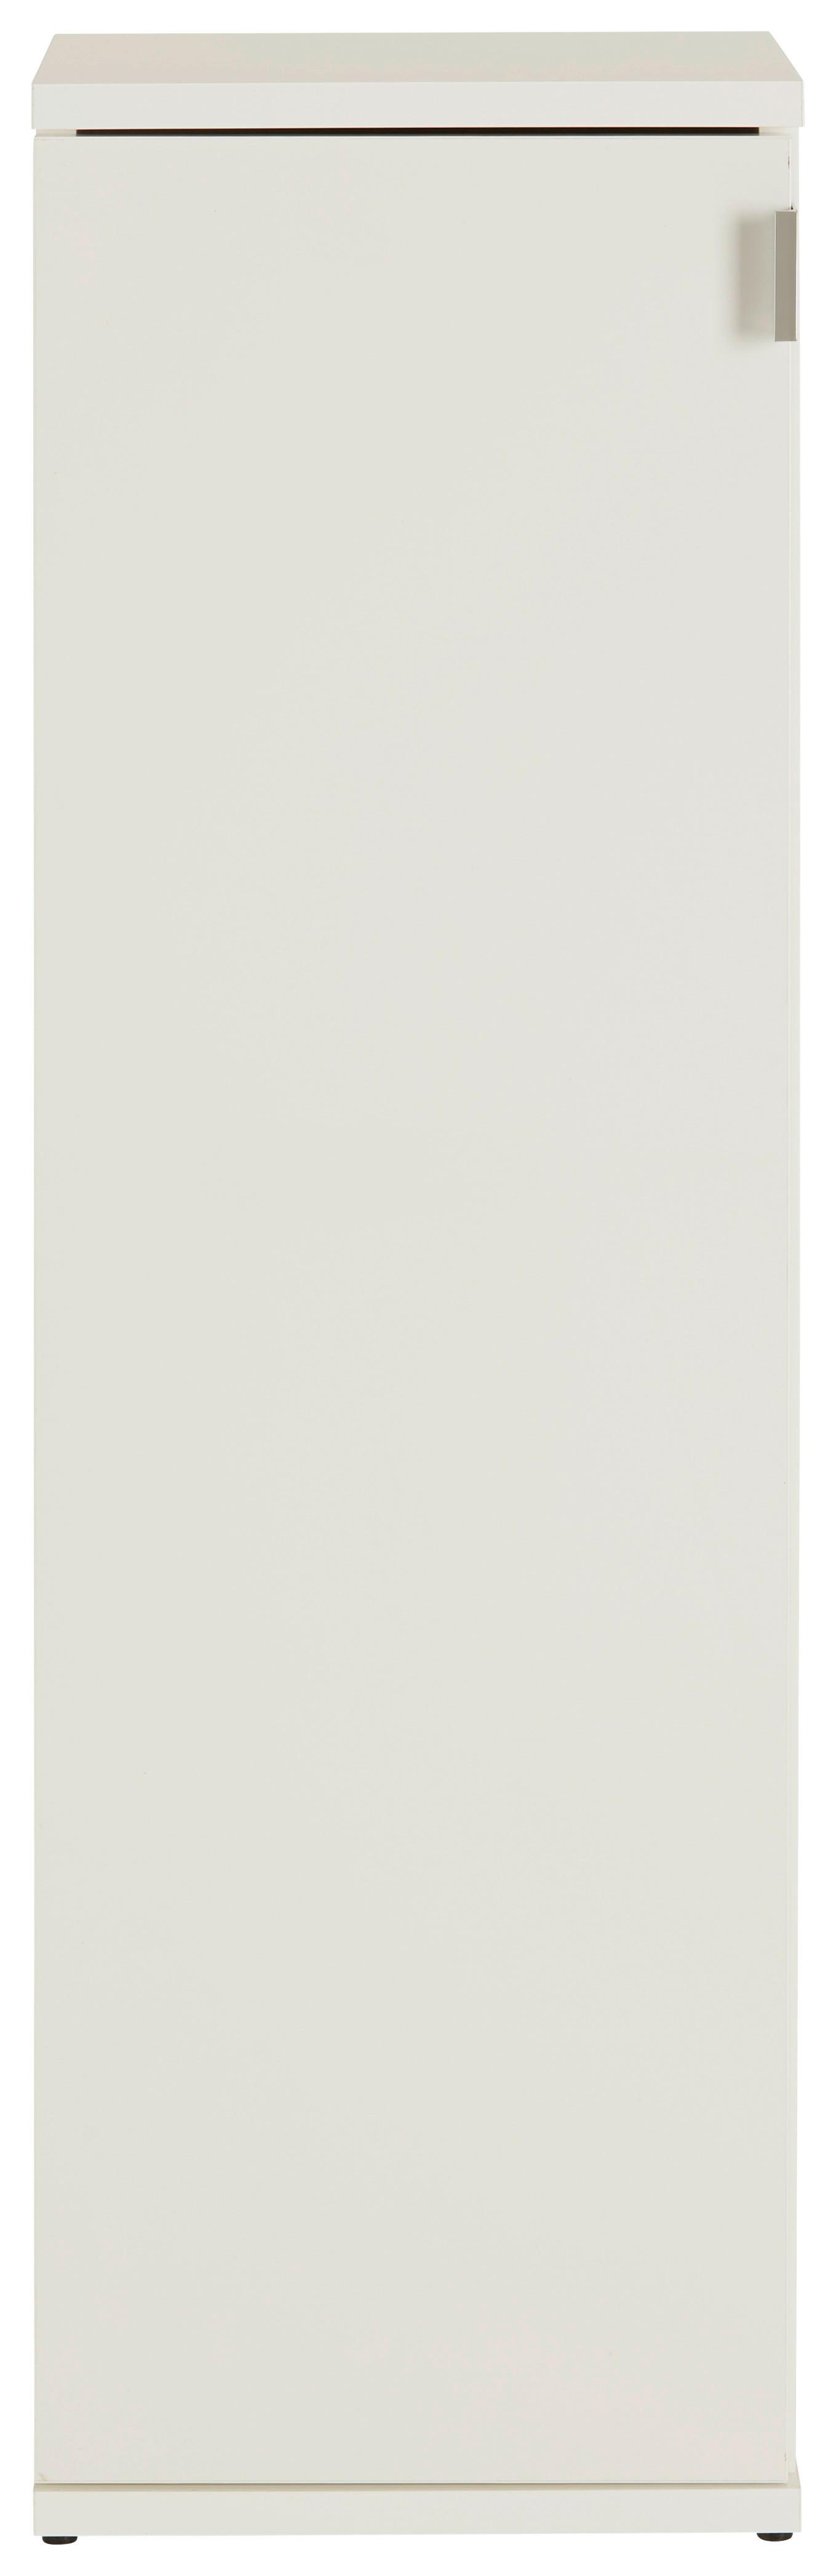 Schuhschrank in Weiß - Chromfarben/Weiß hochglanz, MODERN, Holzwerkstoff/Metall (30/99/34cm) - Modern Living